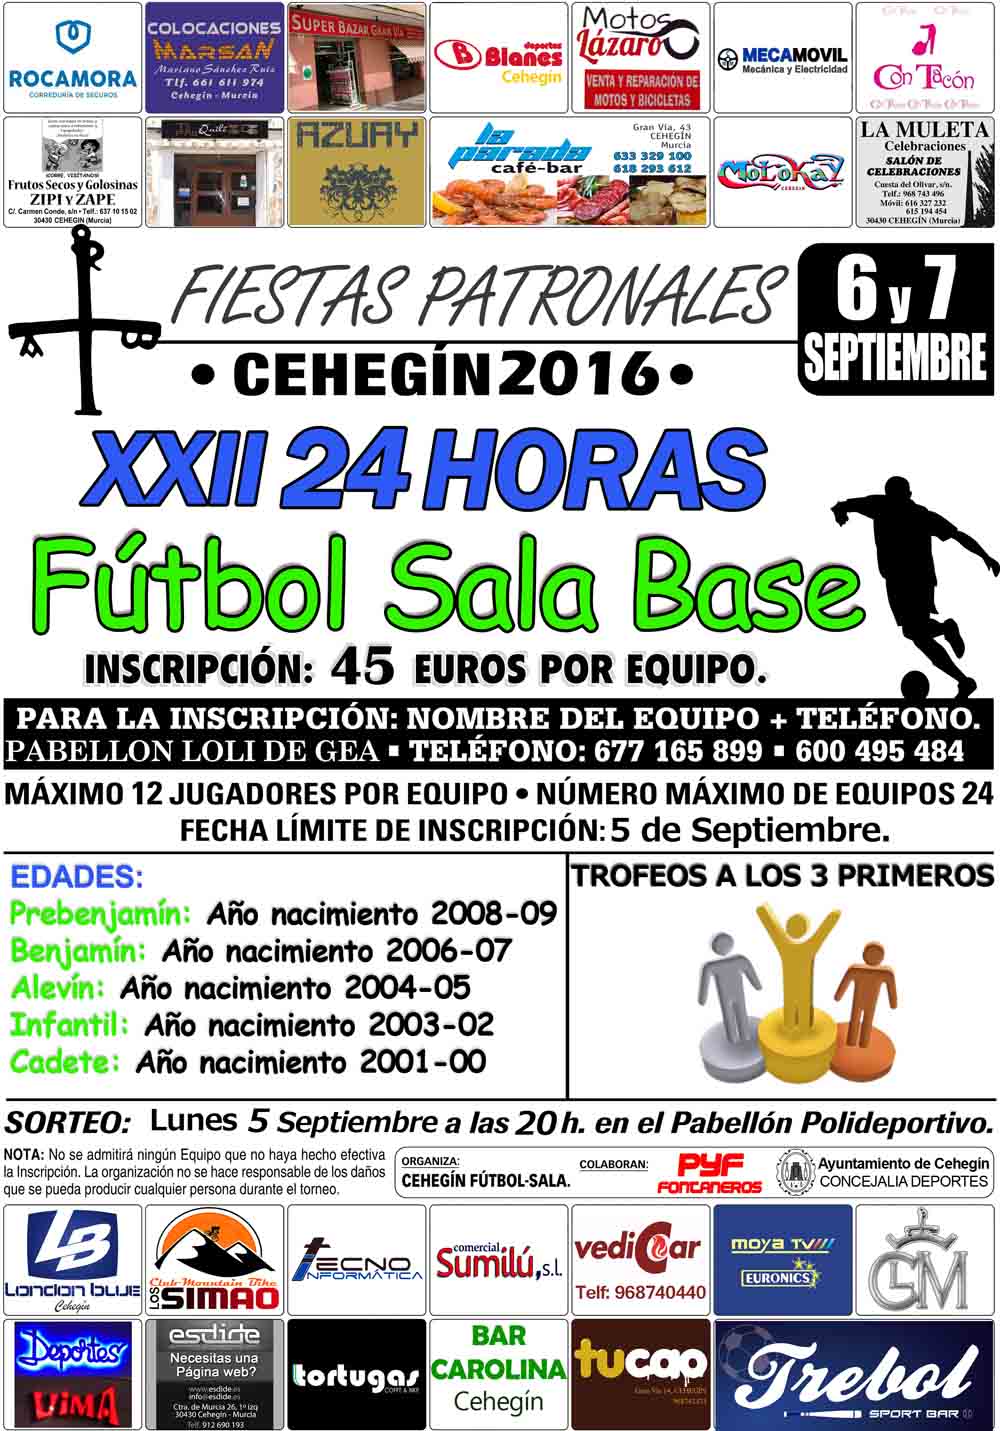 Las XXII 24 Horas de Fútbol Sala Base de Cehegín se disputarán los días 6 y 7 de septiembre